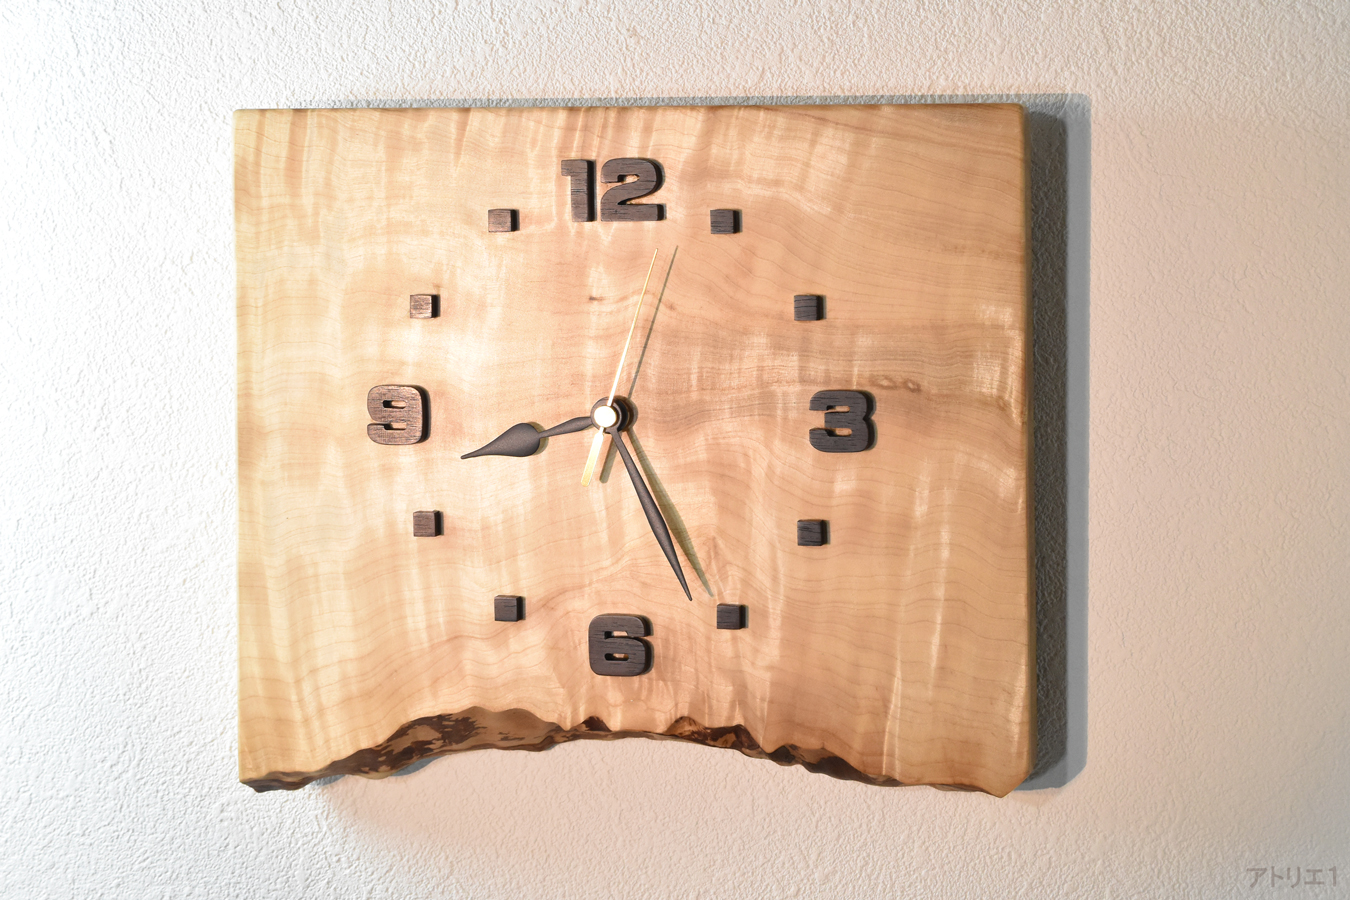 この時計に使用している栃の木には縮み杢が現れており、そのシルクのカーテンのように輝く様は、まるで北欧やカナダ、南極などの空に浮かぶオーロラのようです。これは、一度はその本物の輝きを見たいものと思っている方に飾っていただきたい時計です。